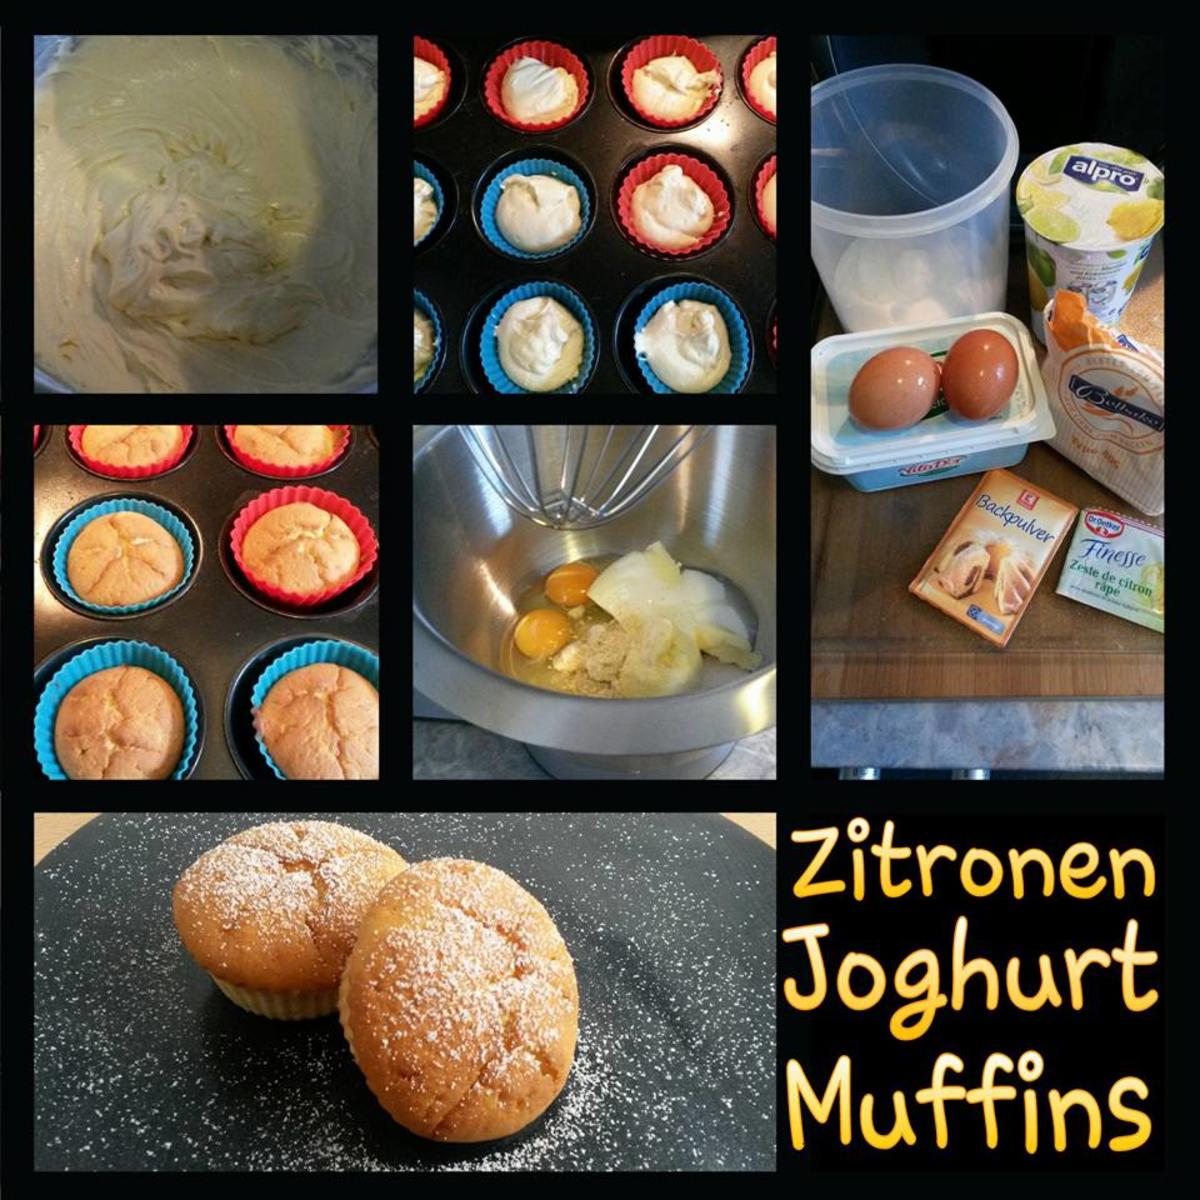 Zitronen Joghurt Muffins - Rezept - Bild Nr. 2951